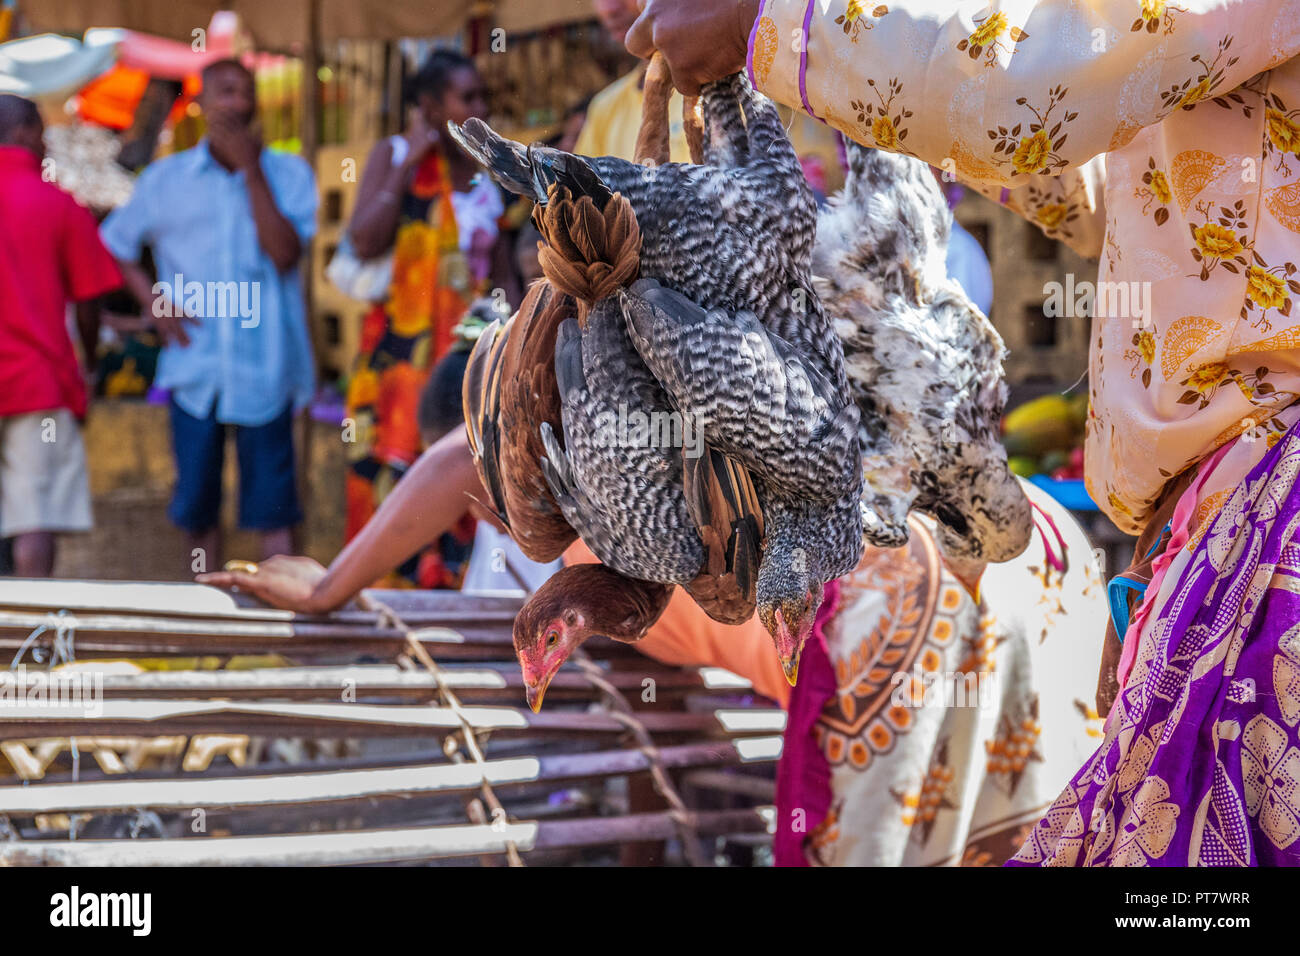 HELL VILLE, MADAGASKAR - Dezember 19, 2015: madagassische Frau kauft Huhn auf dem Markt in Hell Ville, eine Stadt auf der Insel Nosy, nördlich von Madagaskar. Stockfoto